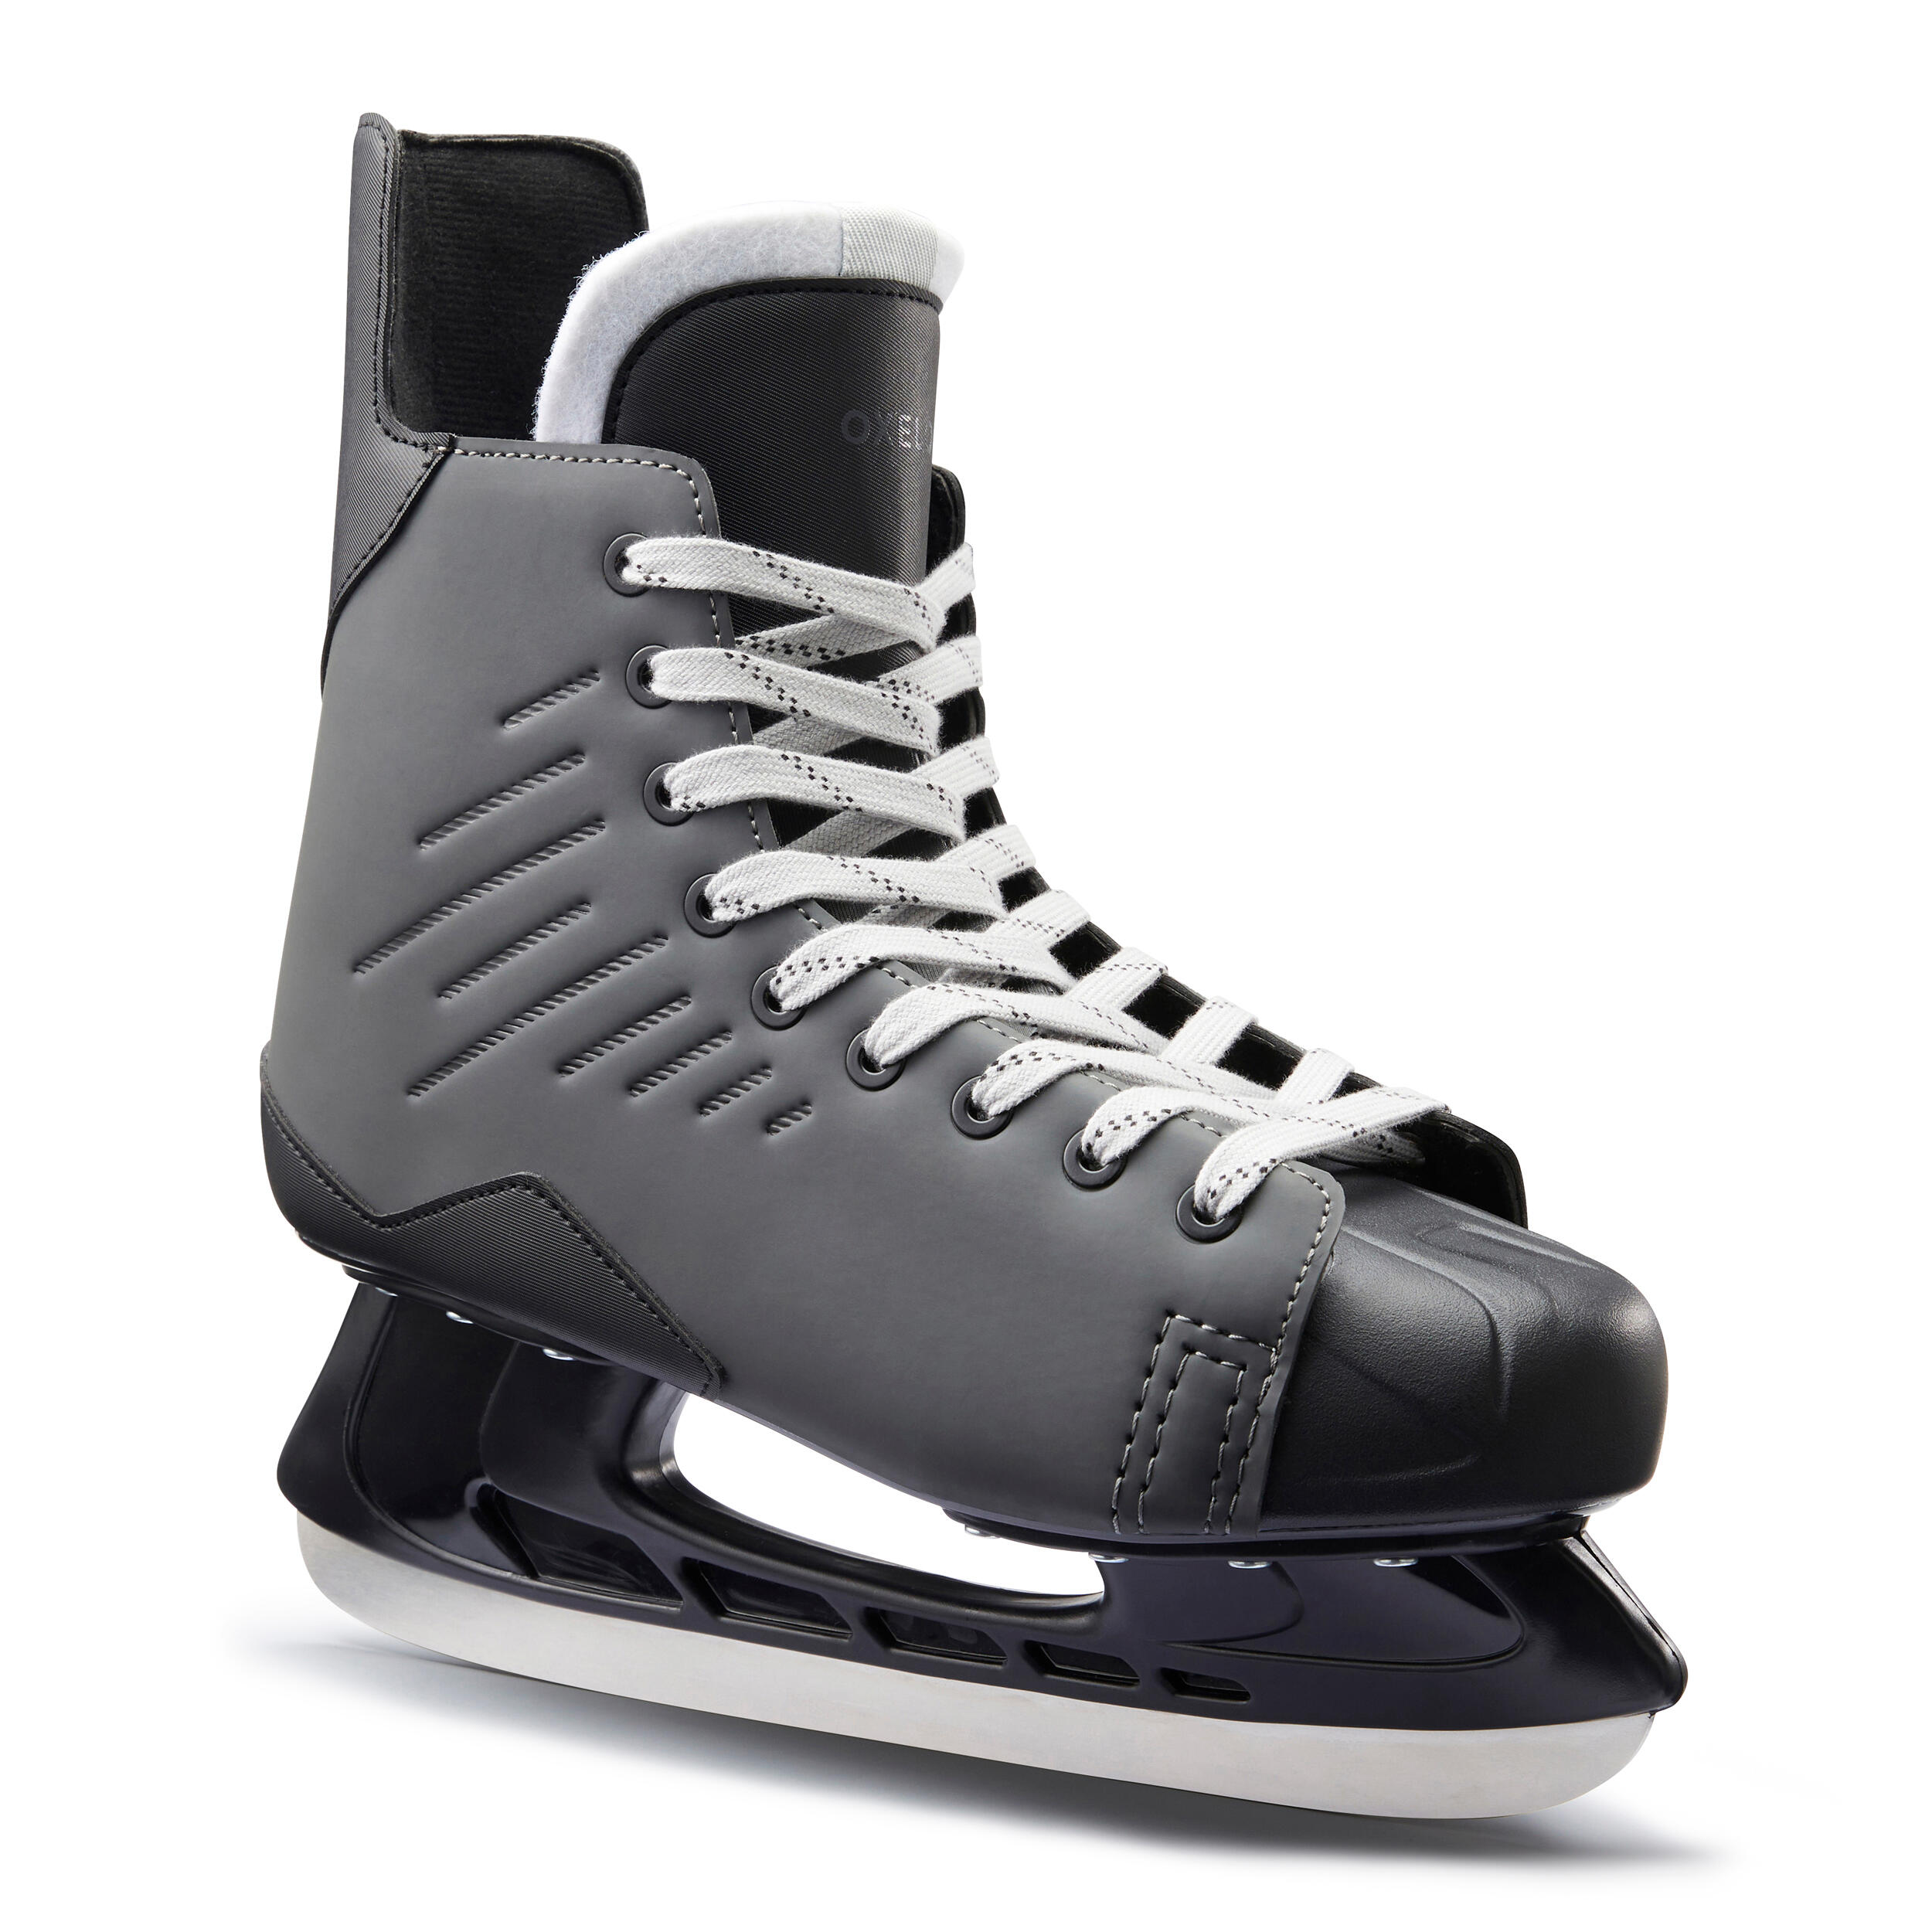 Image of Ice Hockey Skates - 100